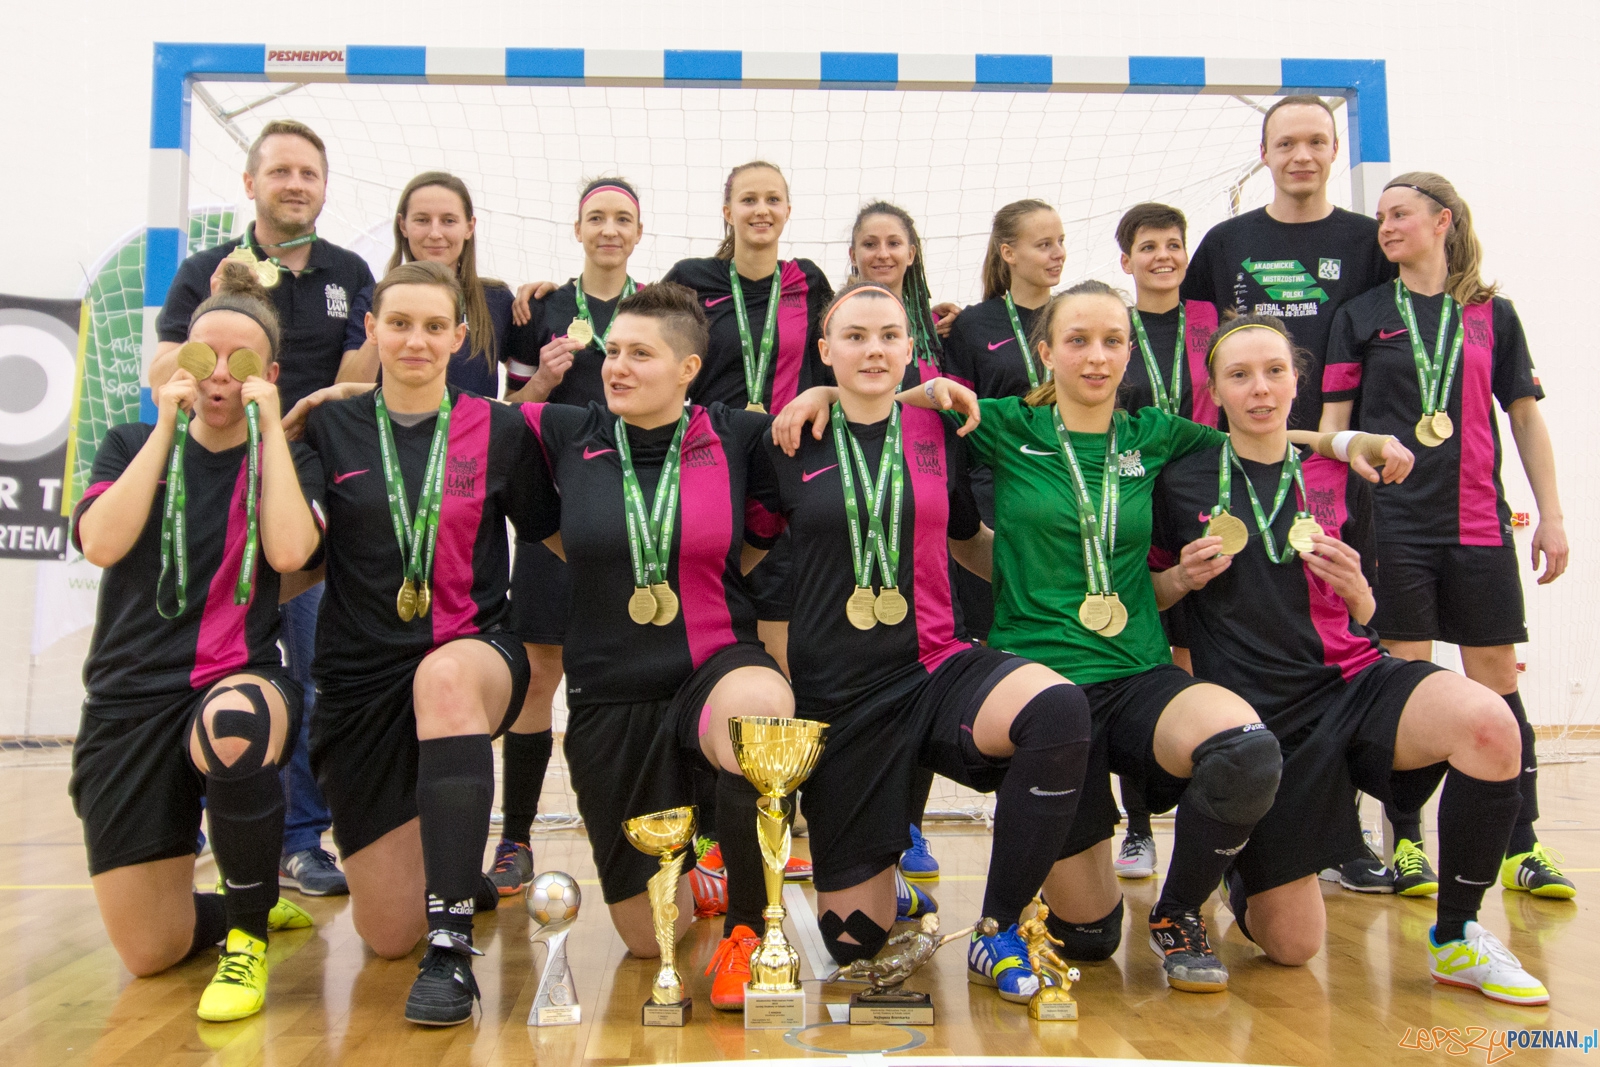 Finał Akademickich Mistrzostw Polski w Futsalu Kobiet  Foto: lepszyPOZNAN.pl / Piotr Rychter